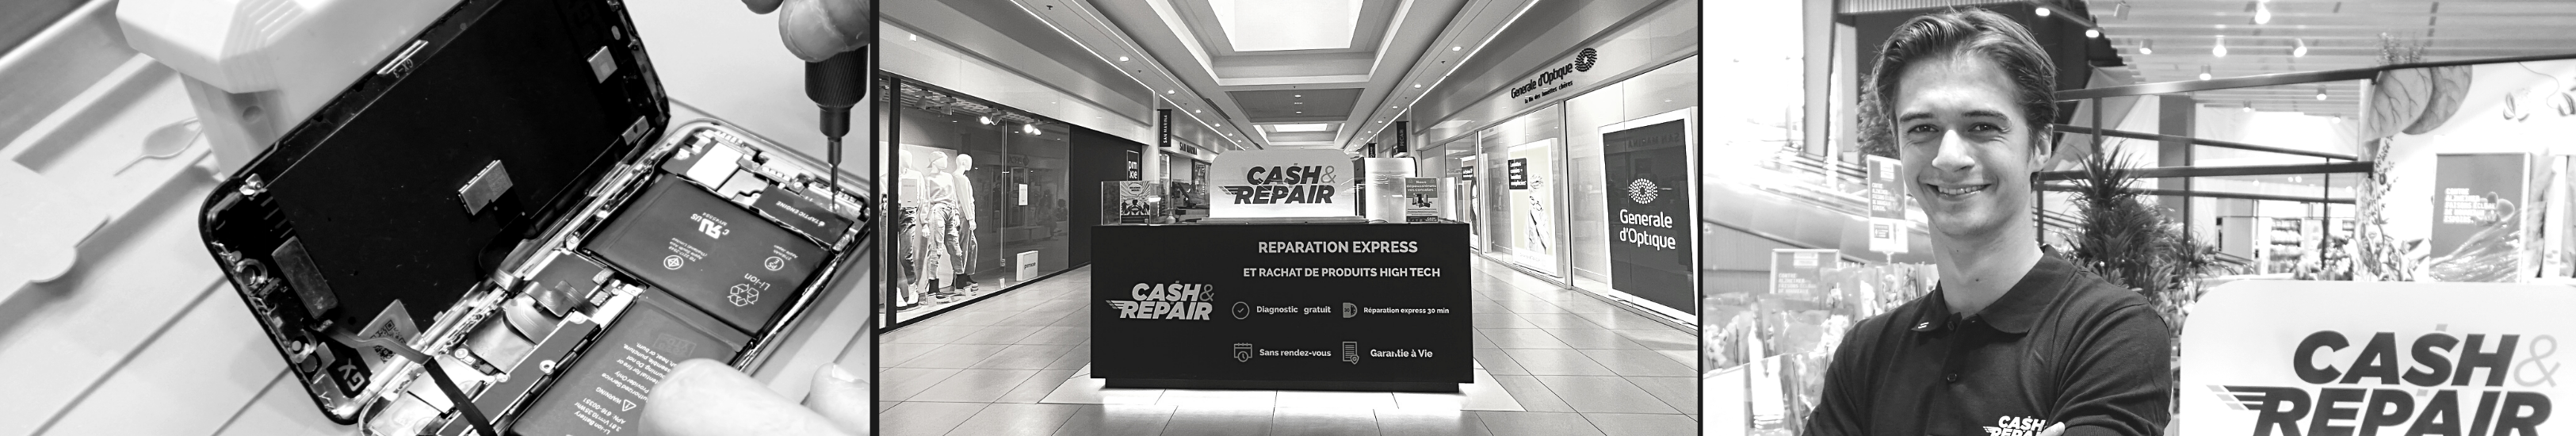 - Atelier de réparation Cash and Repair Thionville